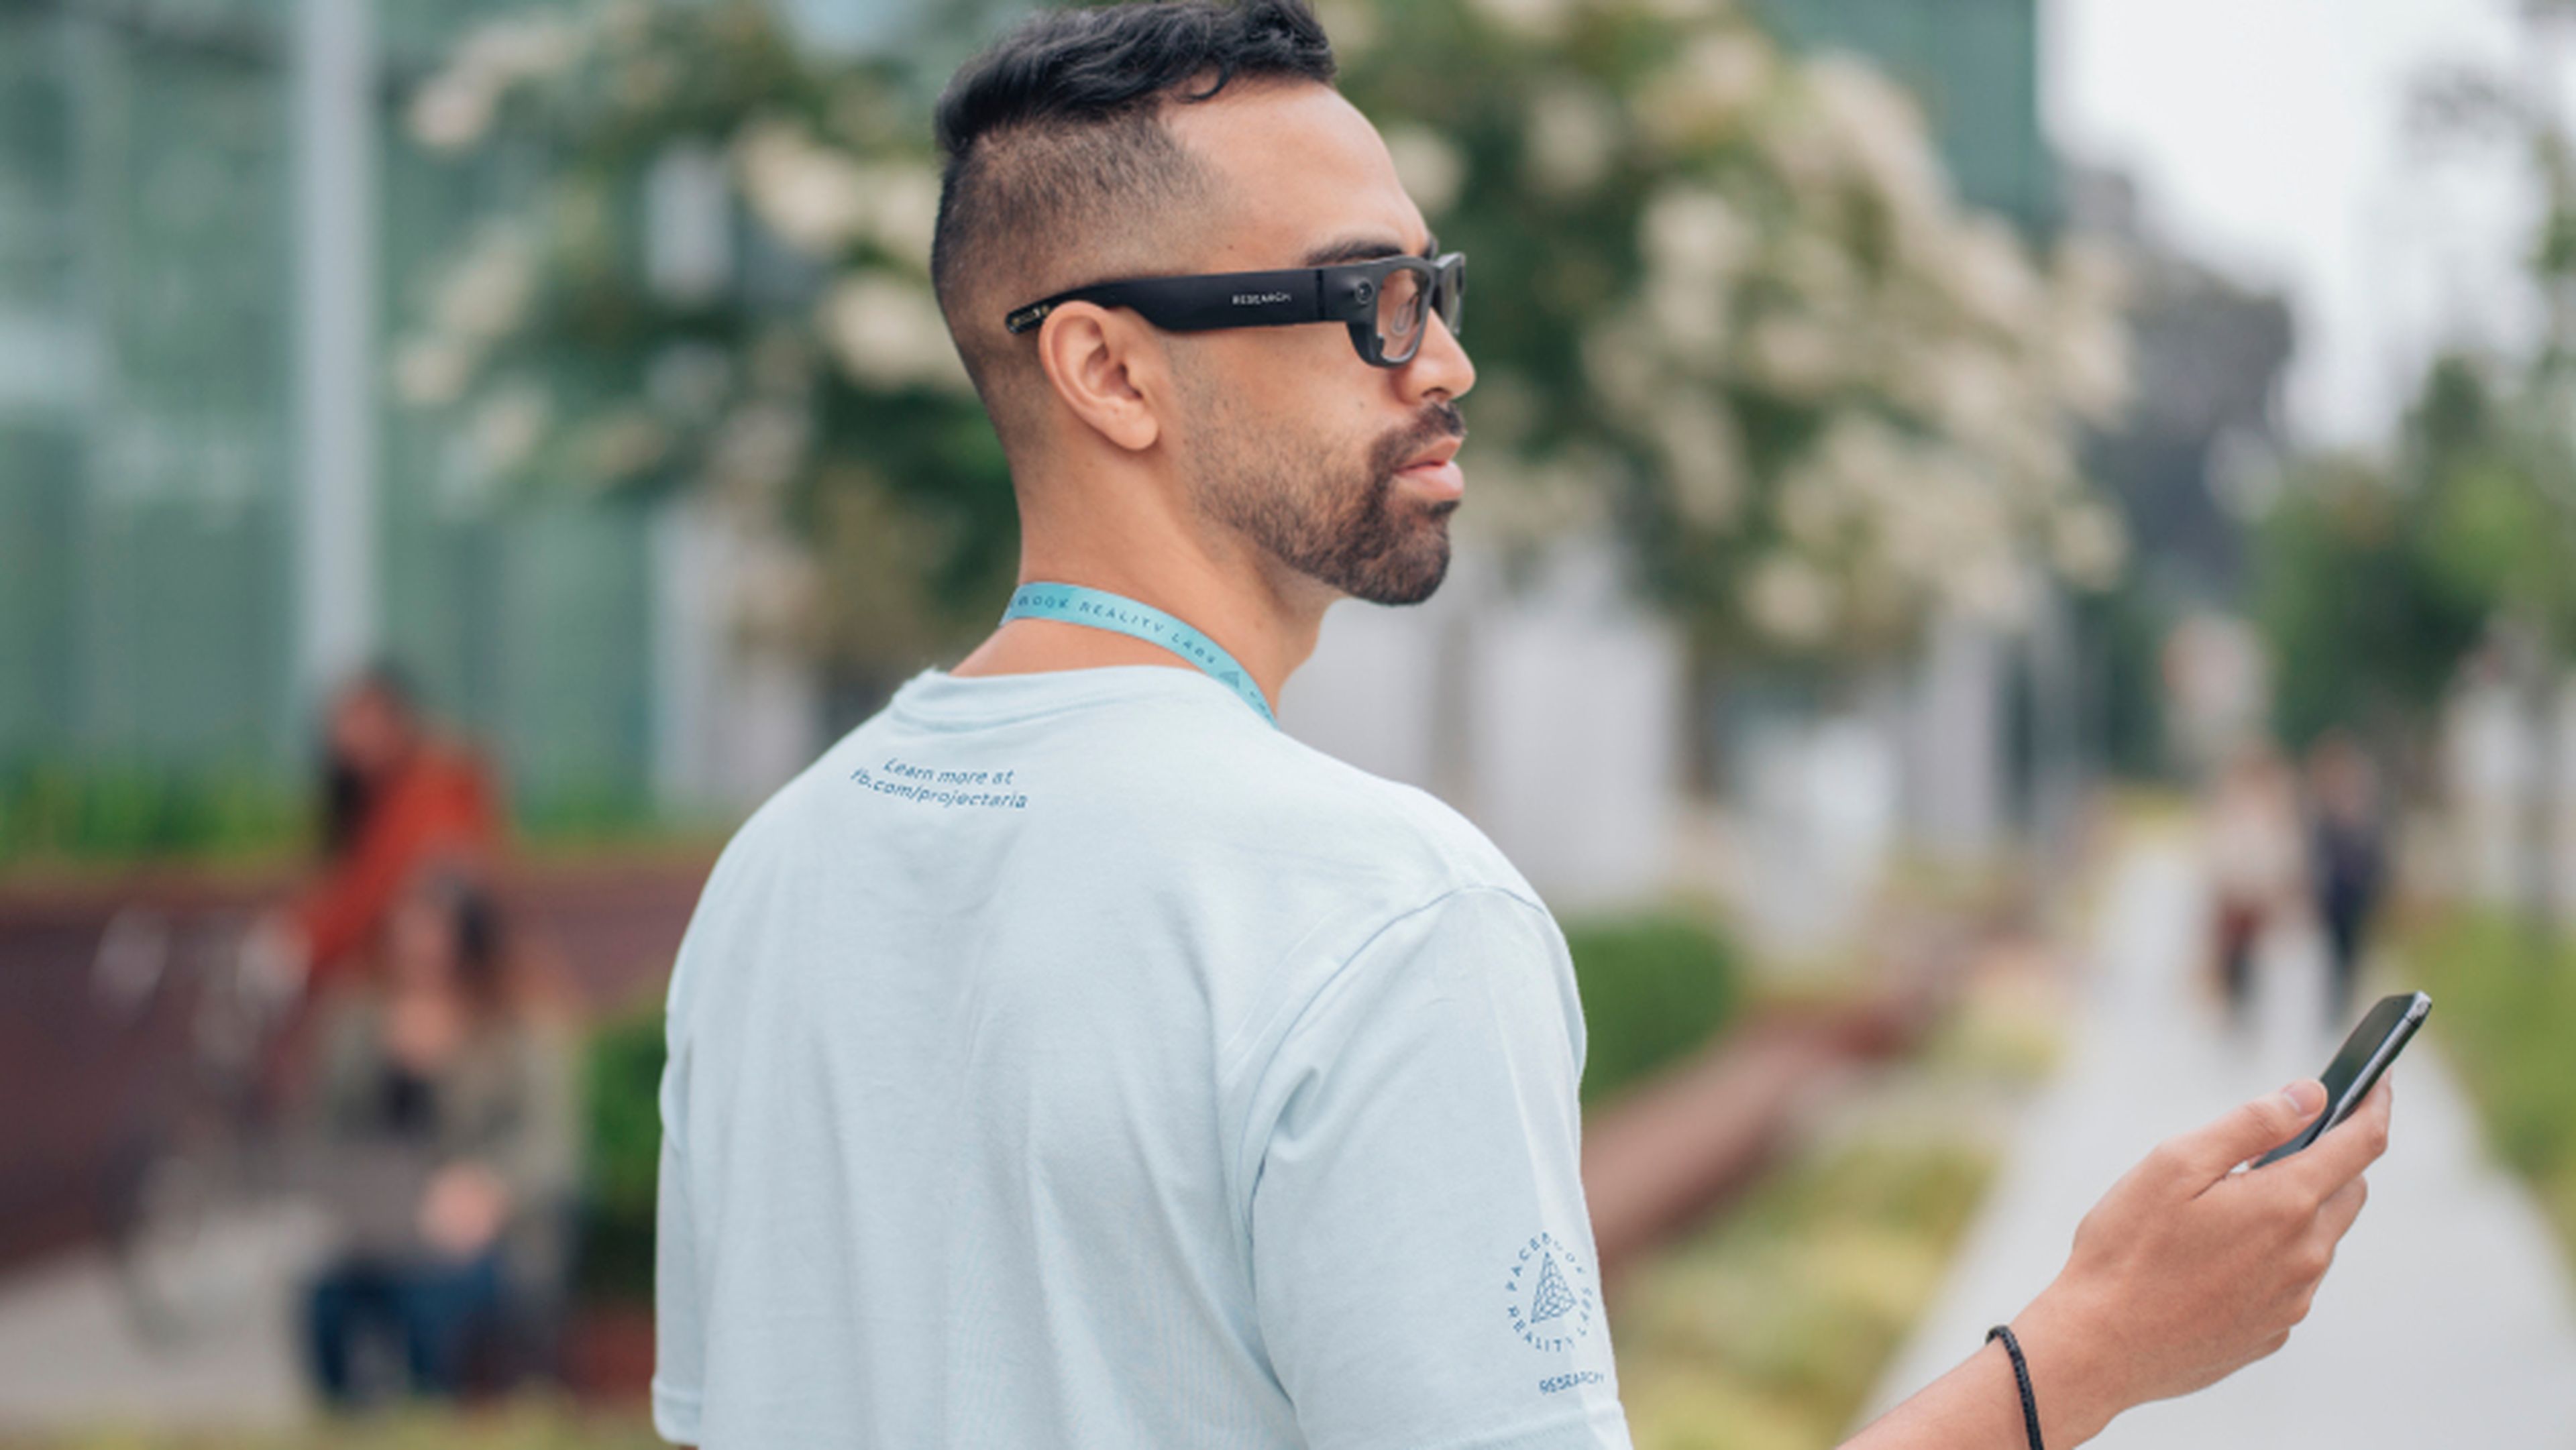 Gafas que utilizarán los empleados de Facebook para 'Project Aria', su iniciativa de realidad aumentada.